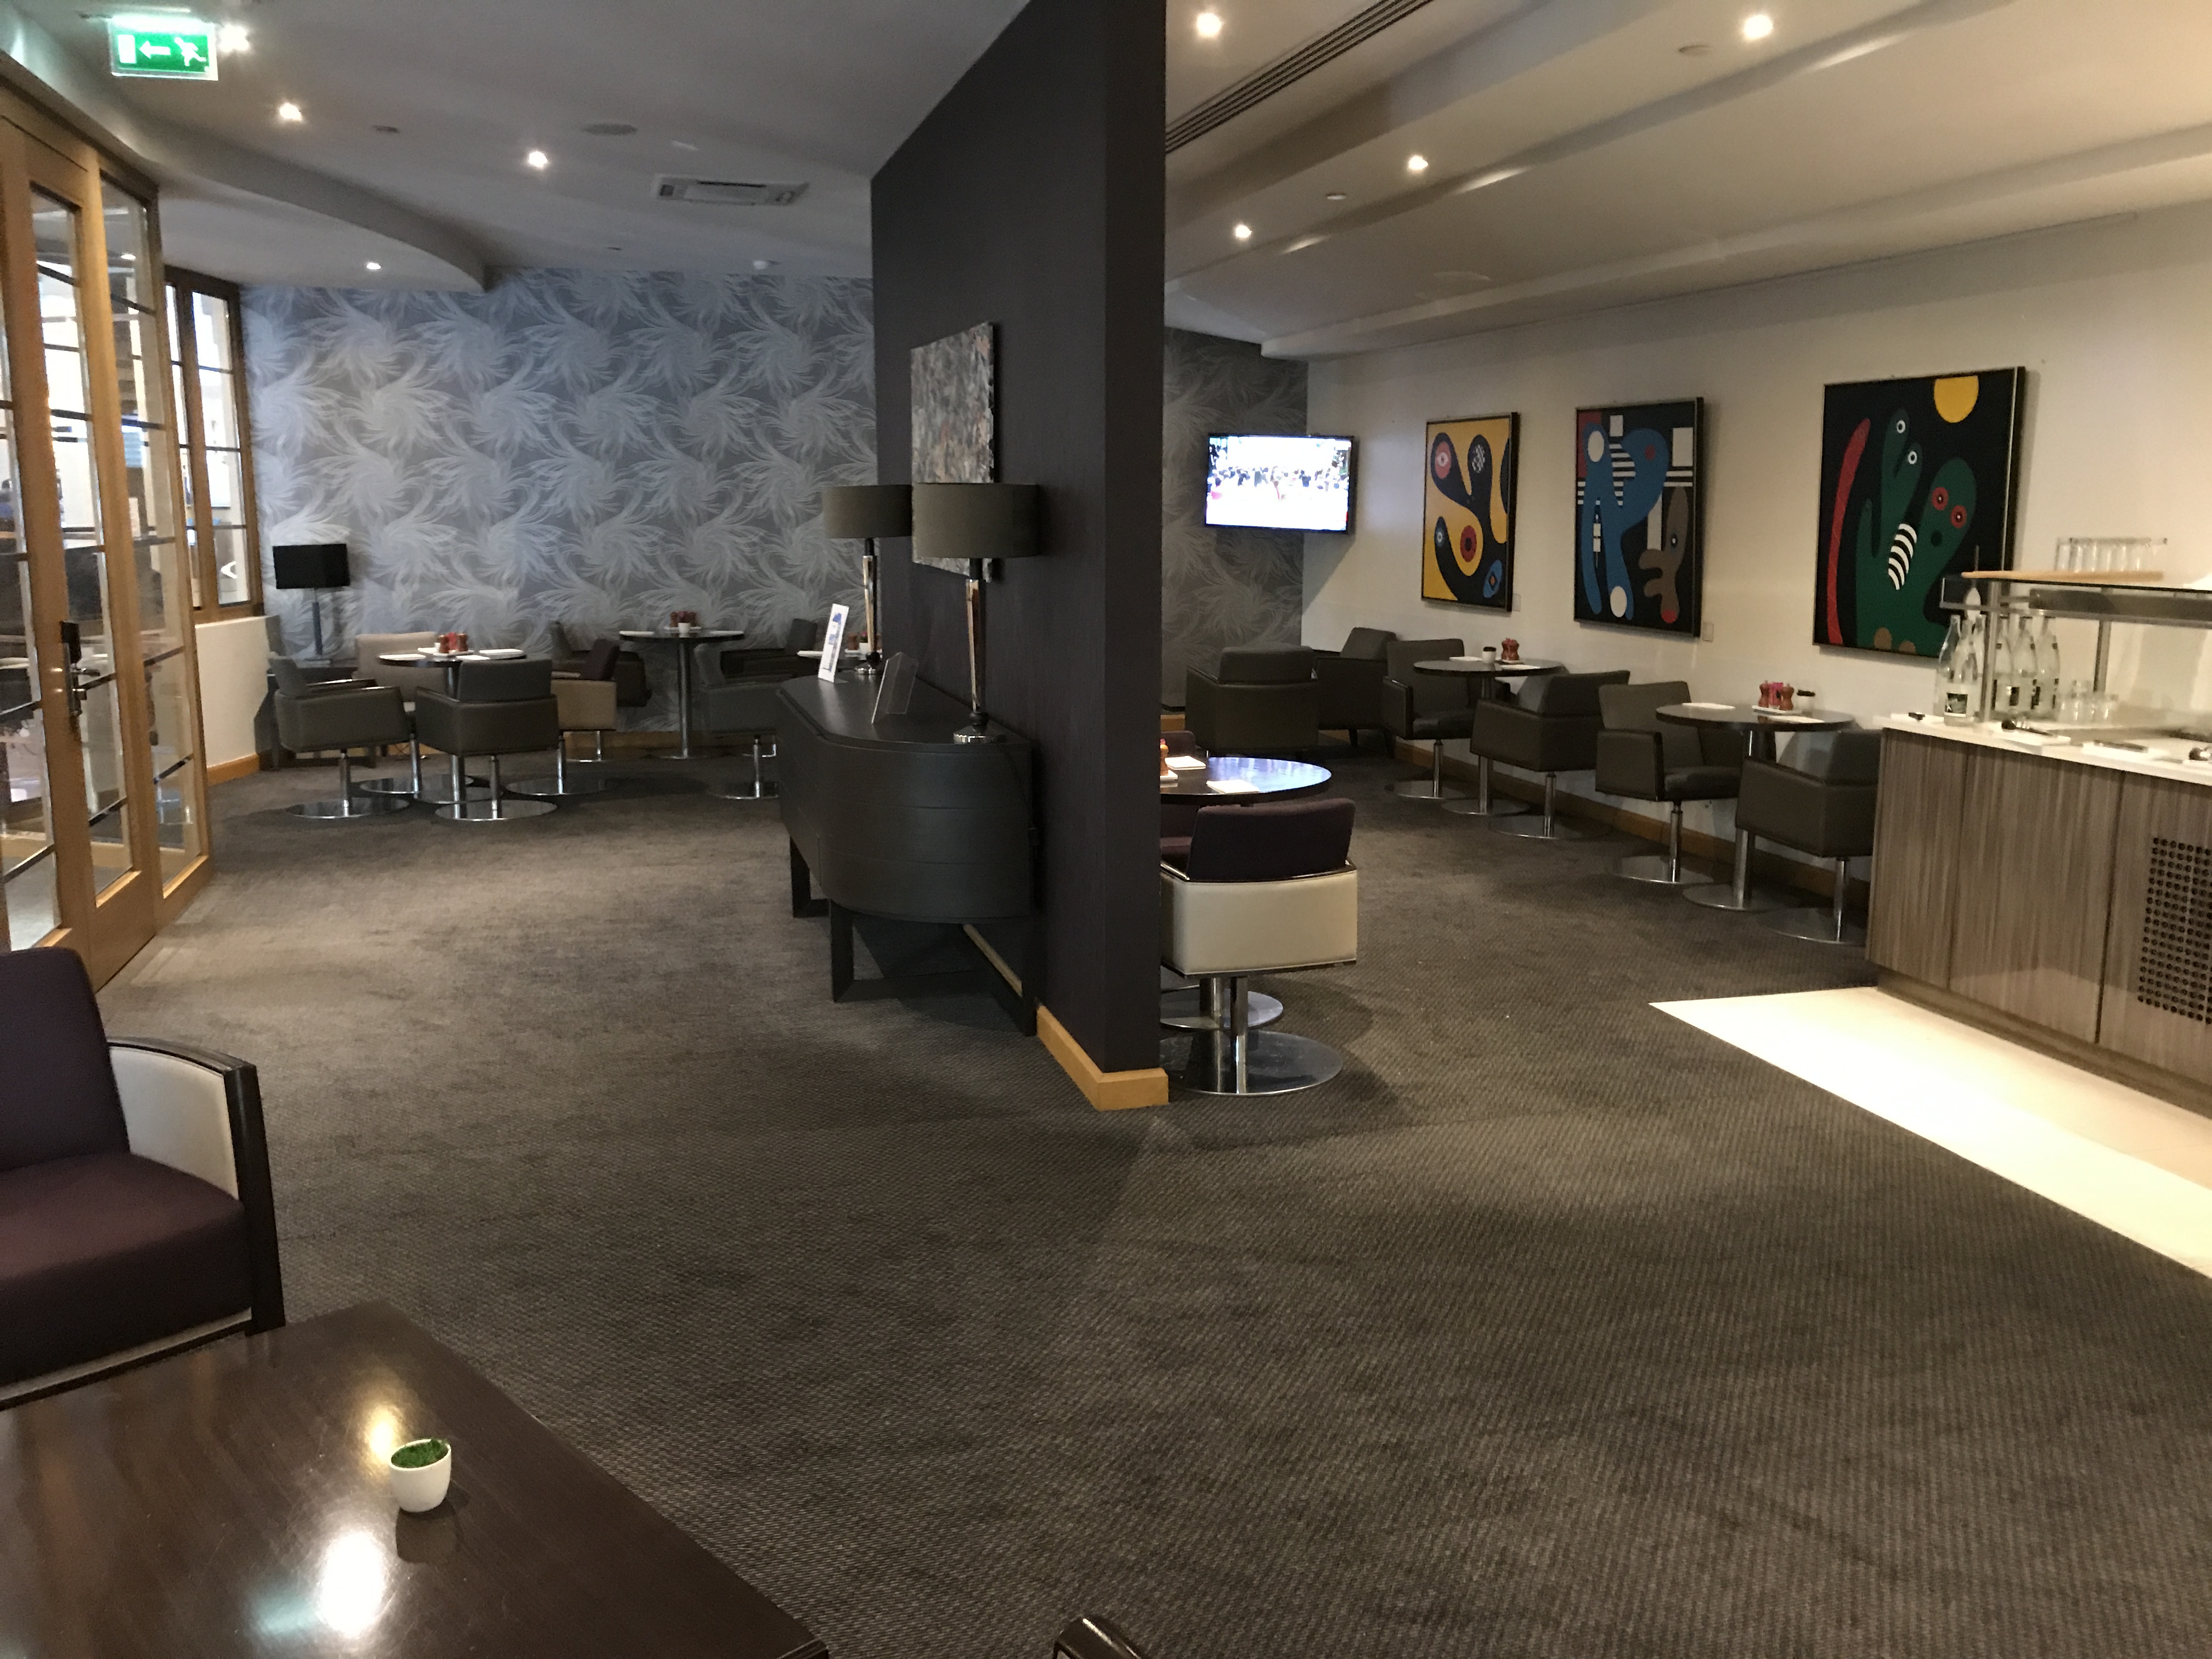 Hilton Paris Charles de Gaulle Airport Executive Lounge